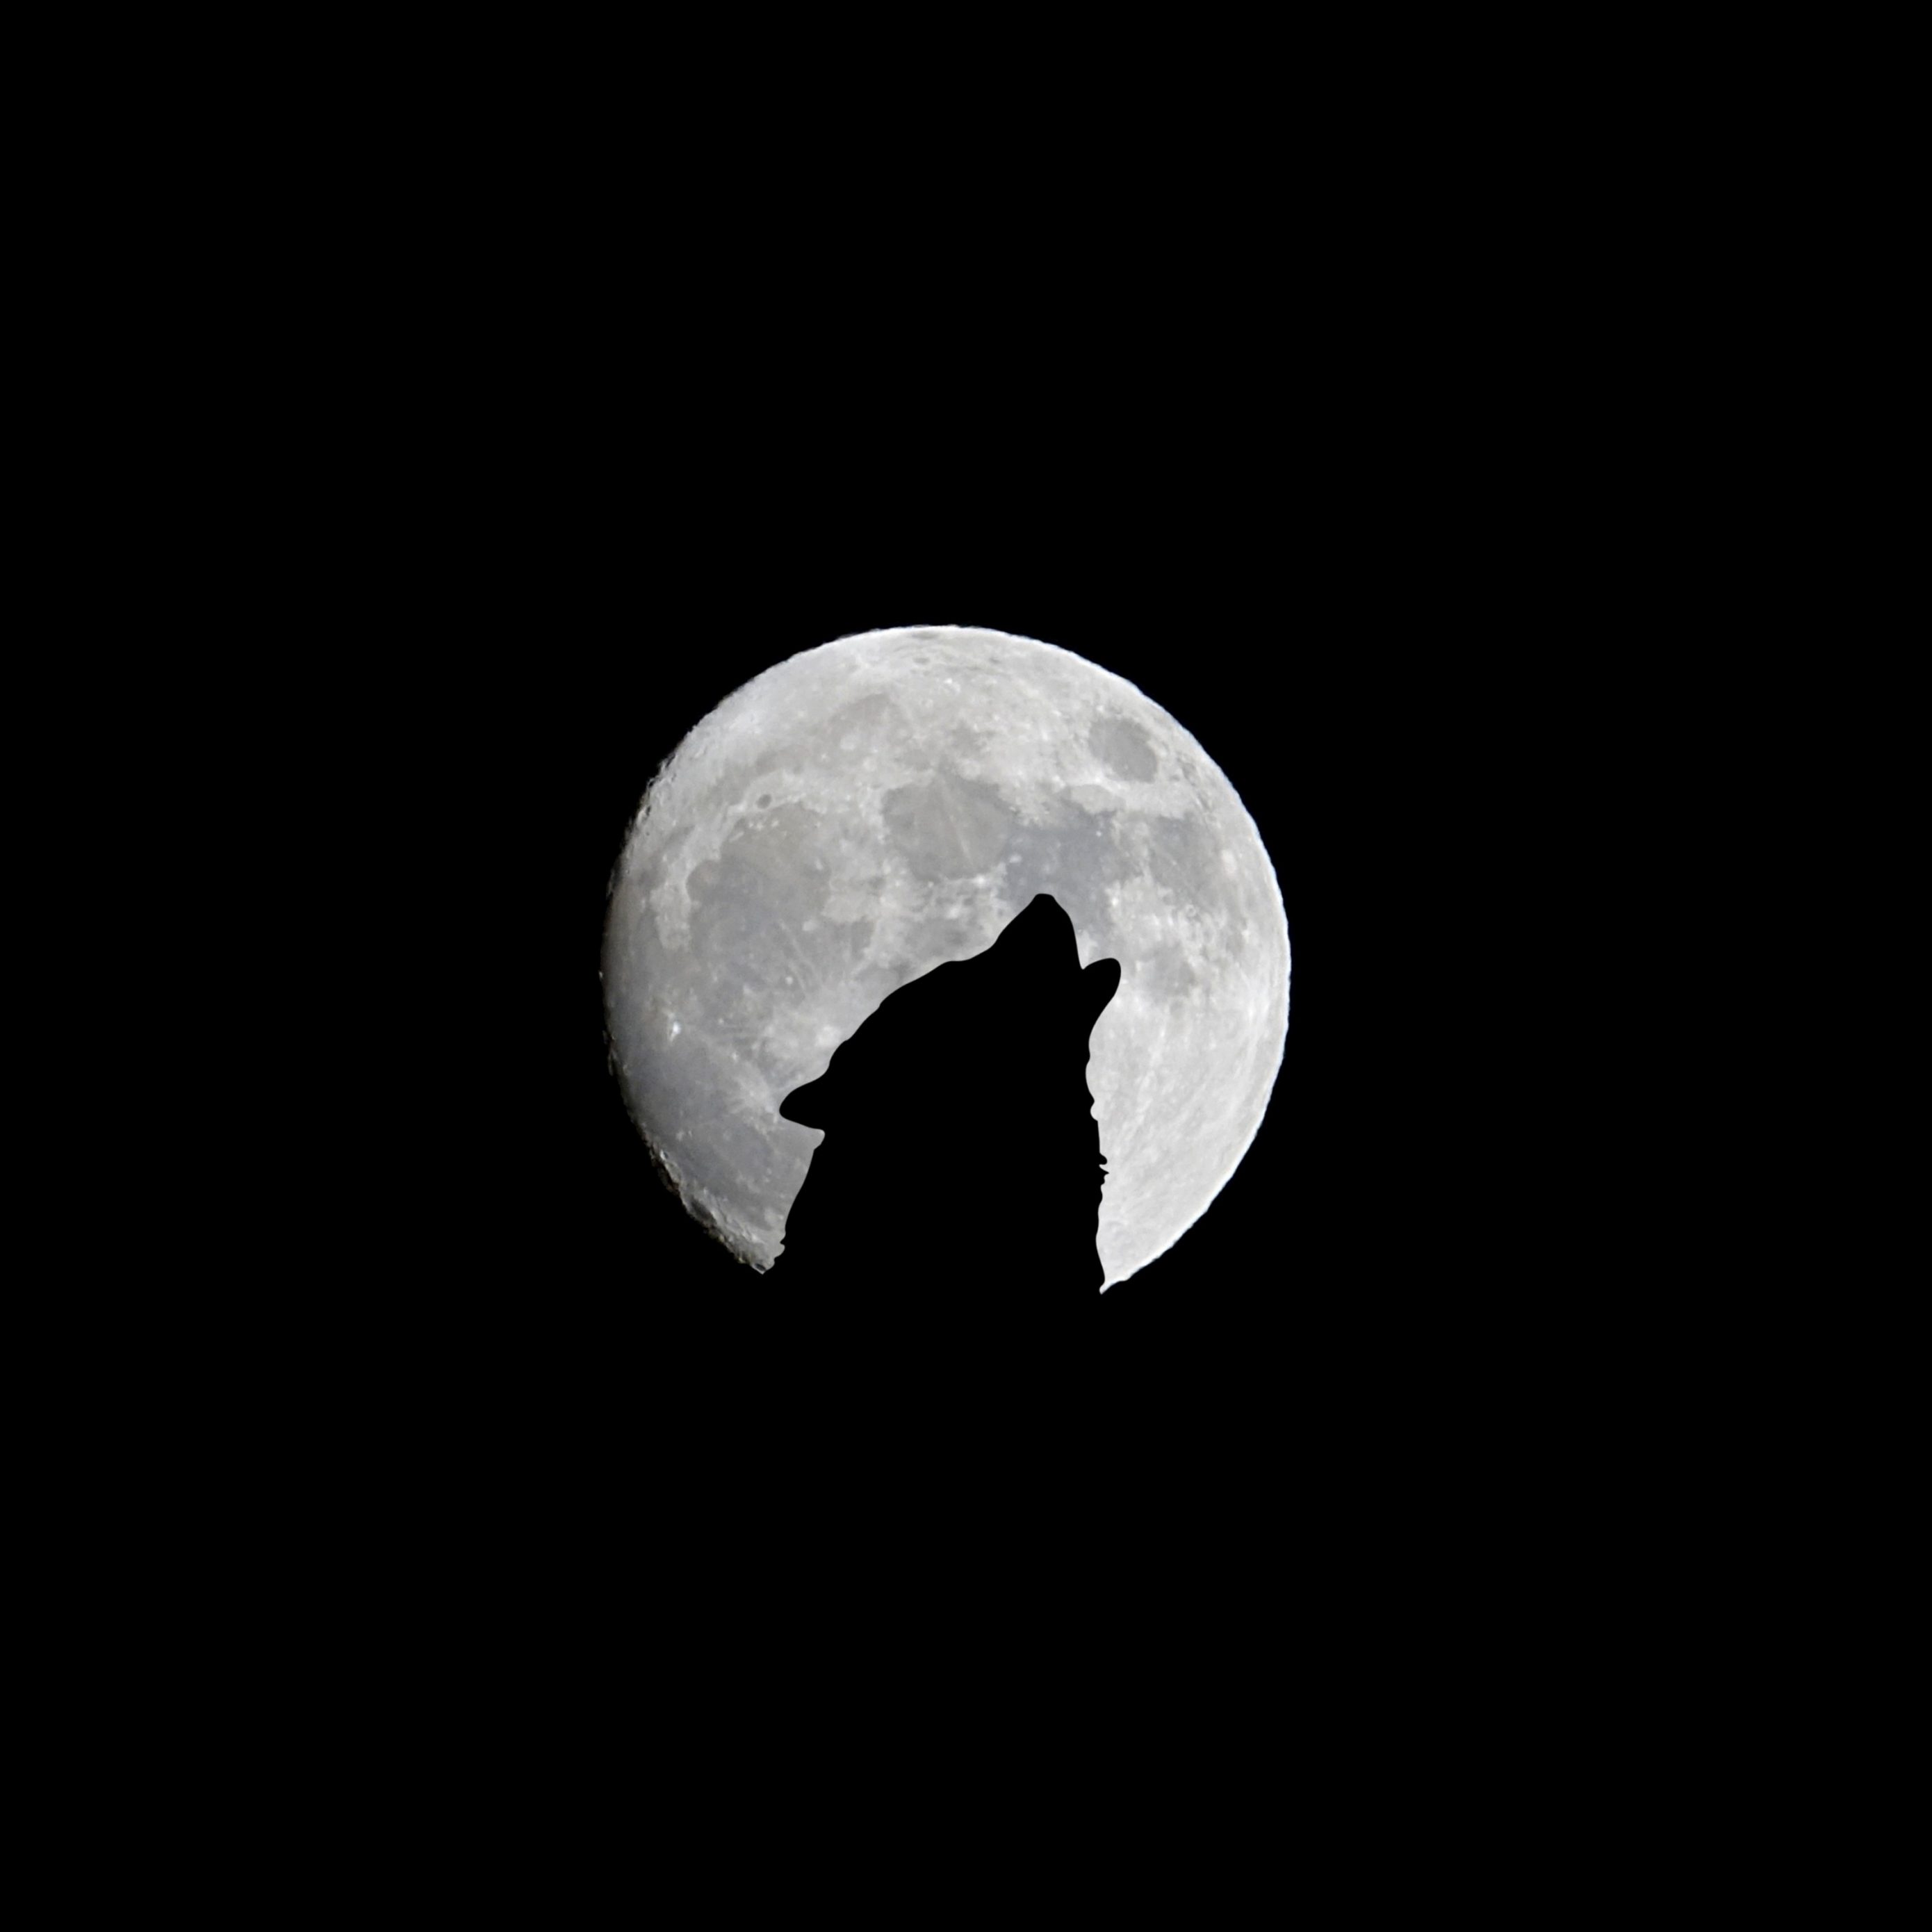 2780x2780 Parallax wallpaper 4k Silhouette of Wolf Full Moon Night Darkness iPad Wallpaper 2780x2780 pixels resolution